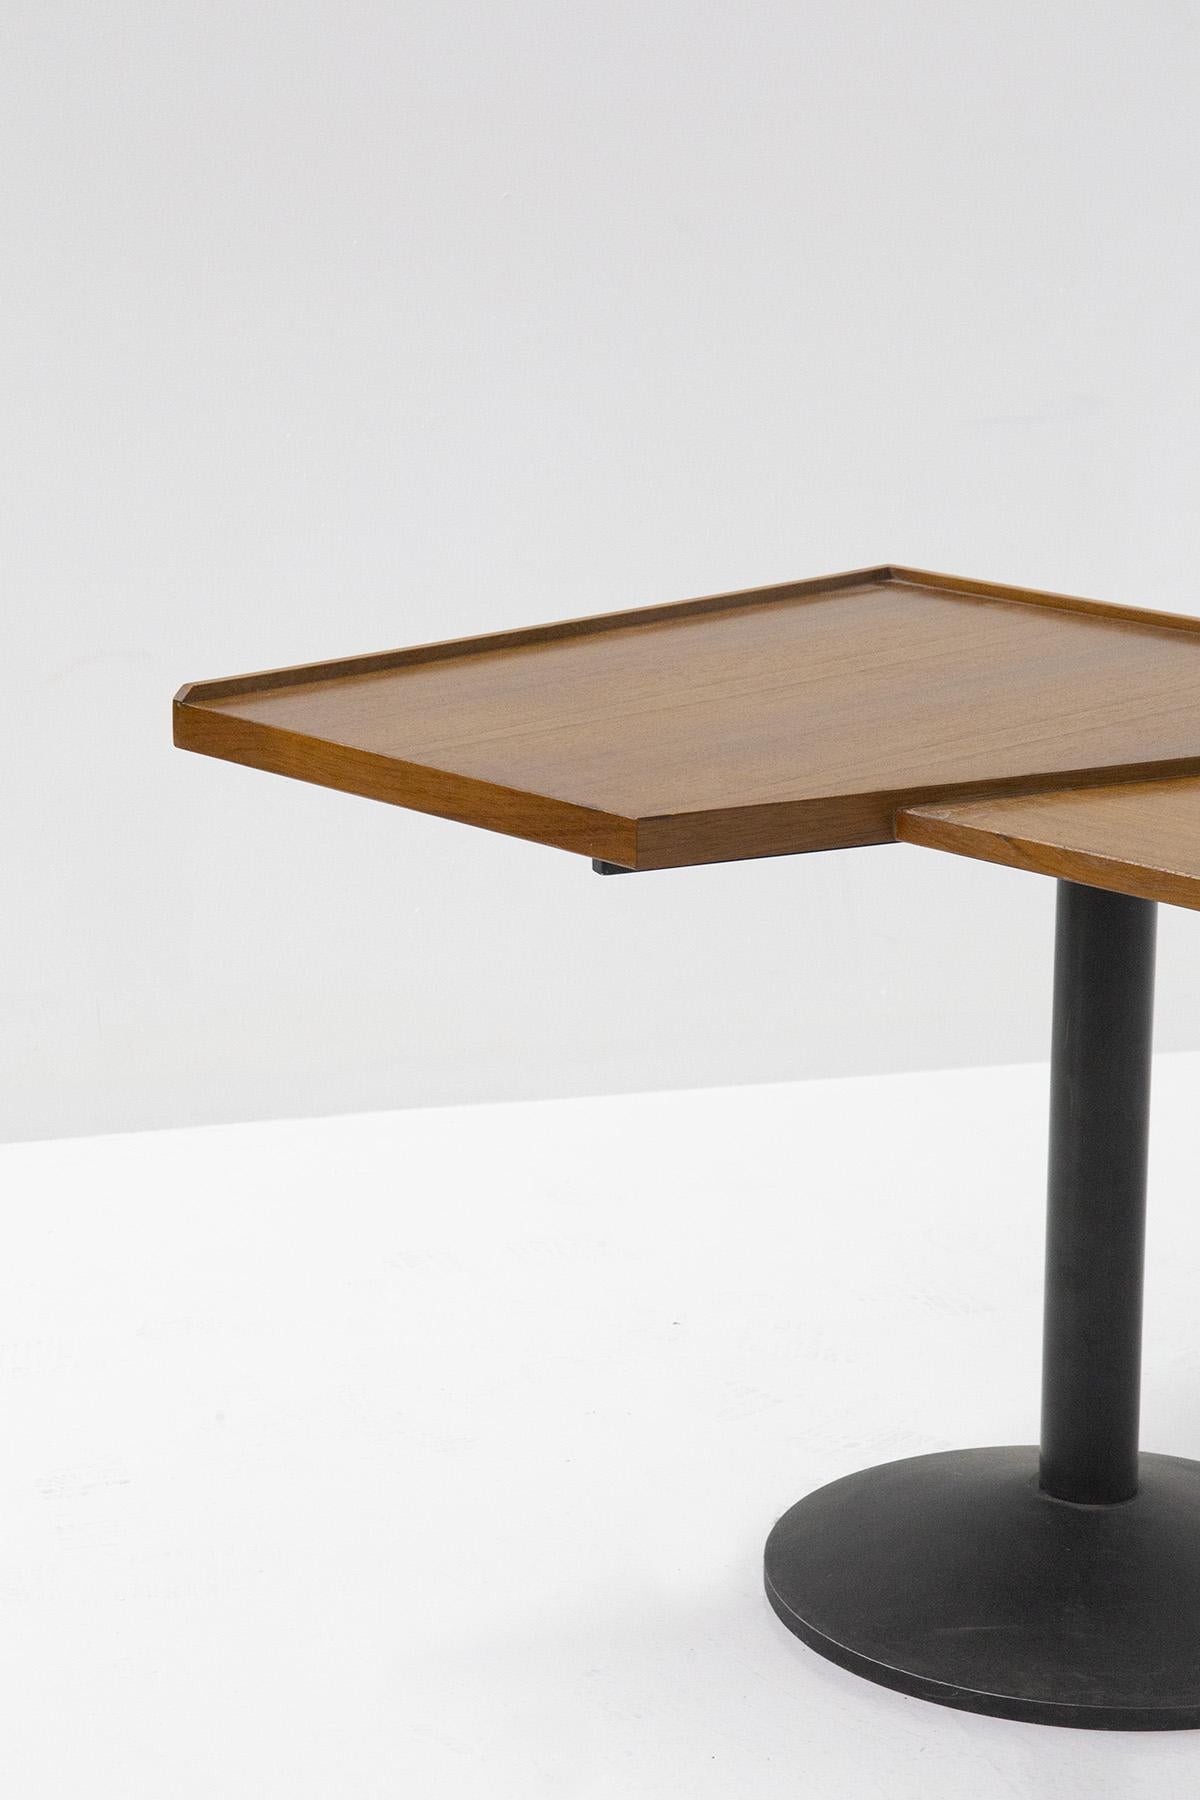 Metal Franco Albini for Poggi Model 840 Stadera Desk For Sale